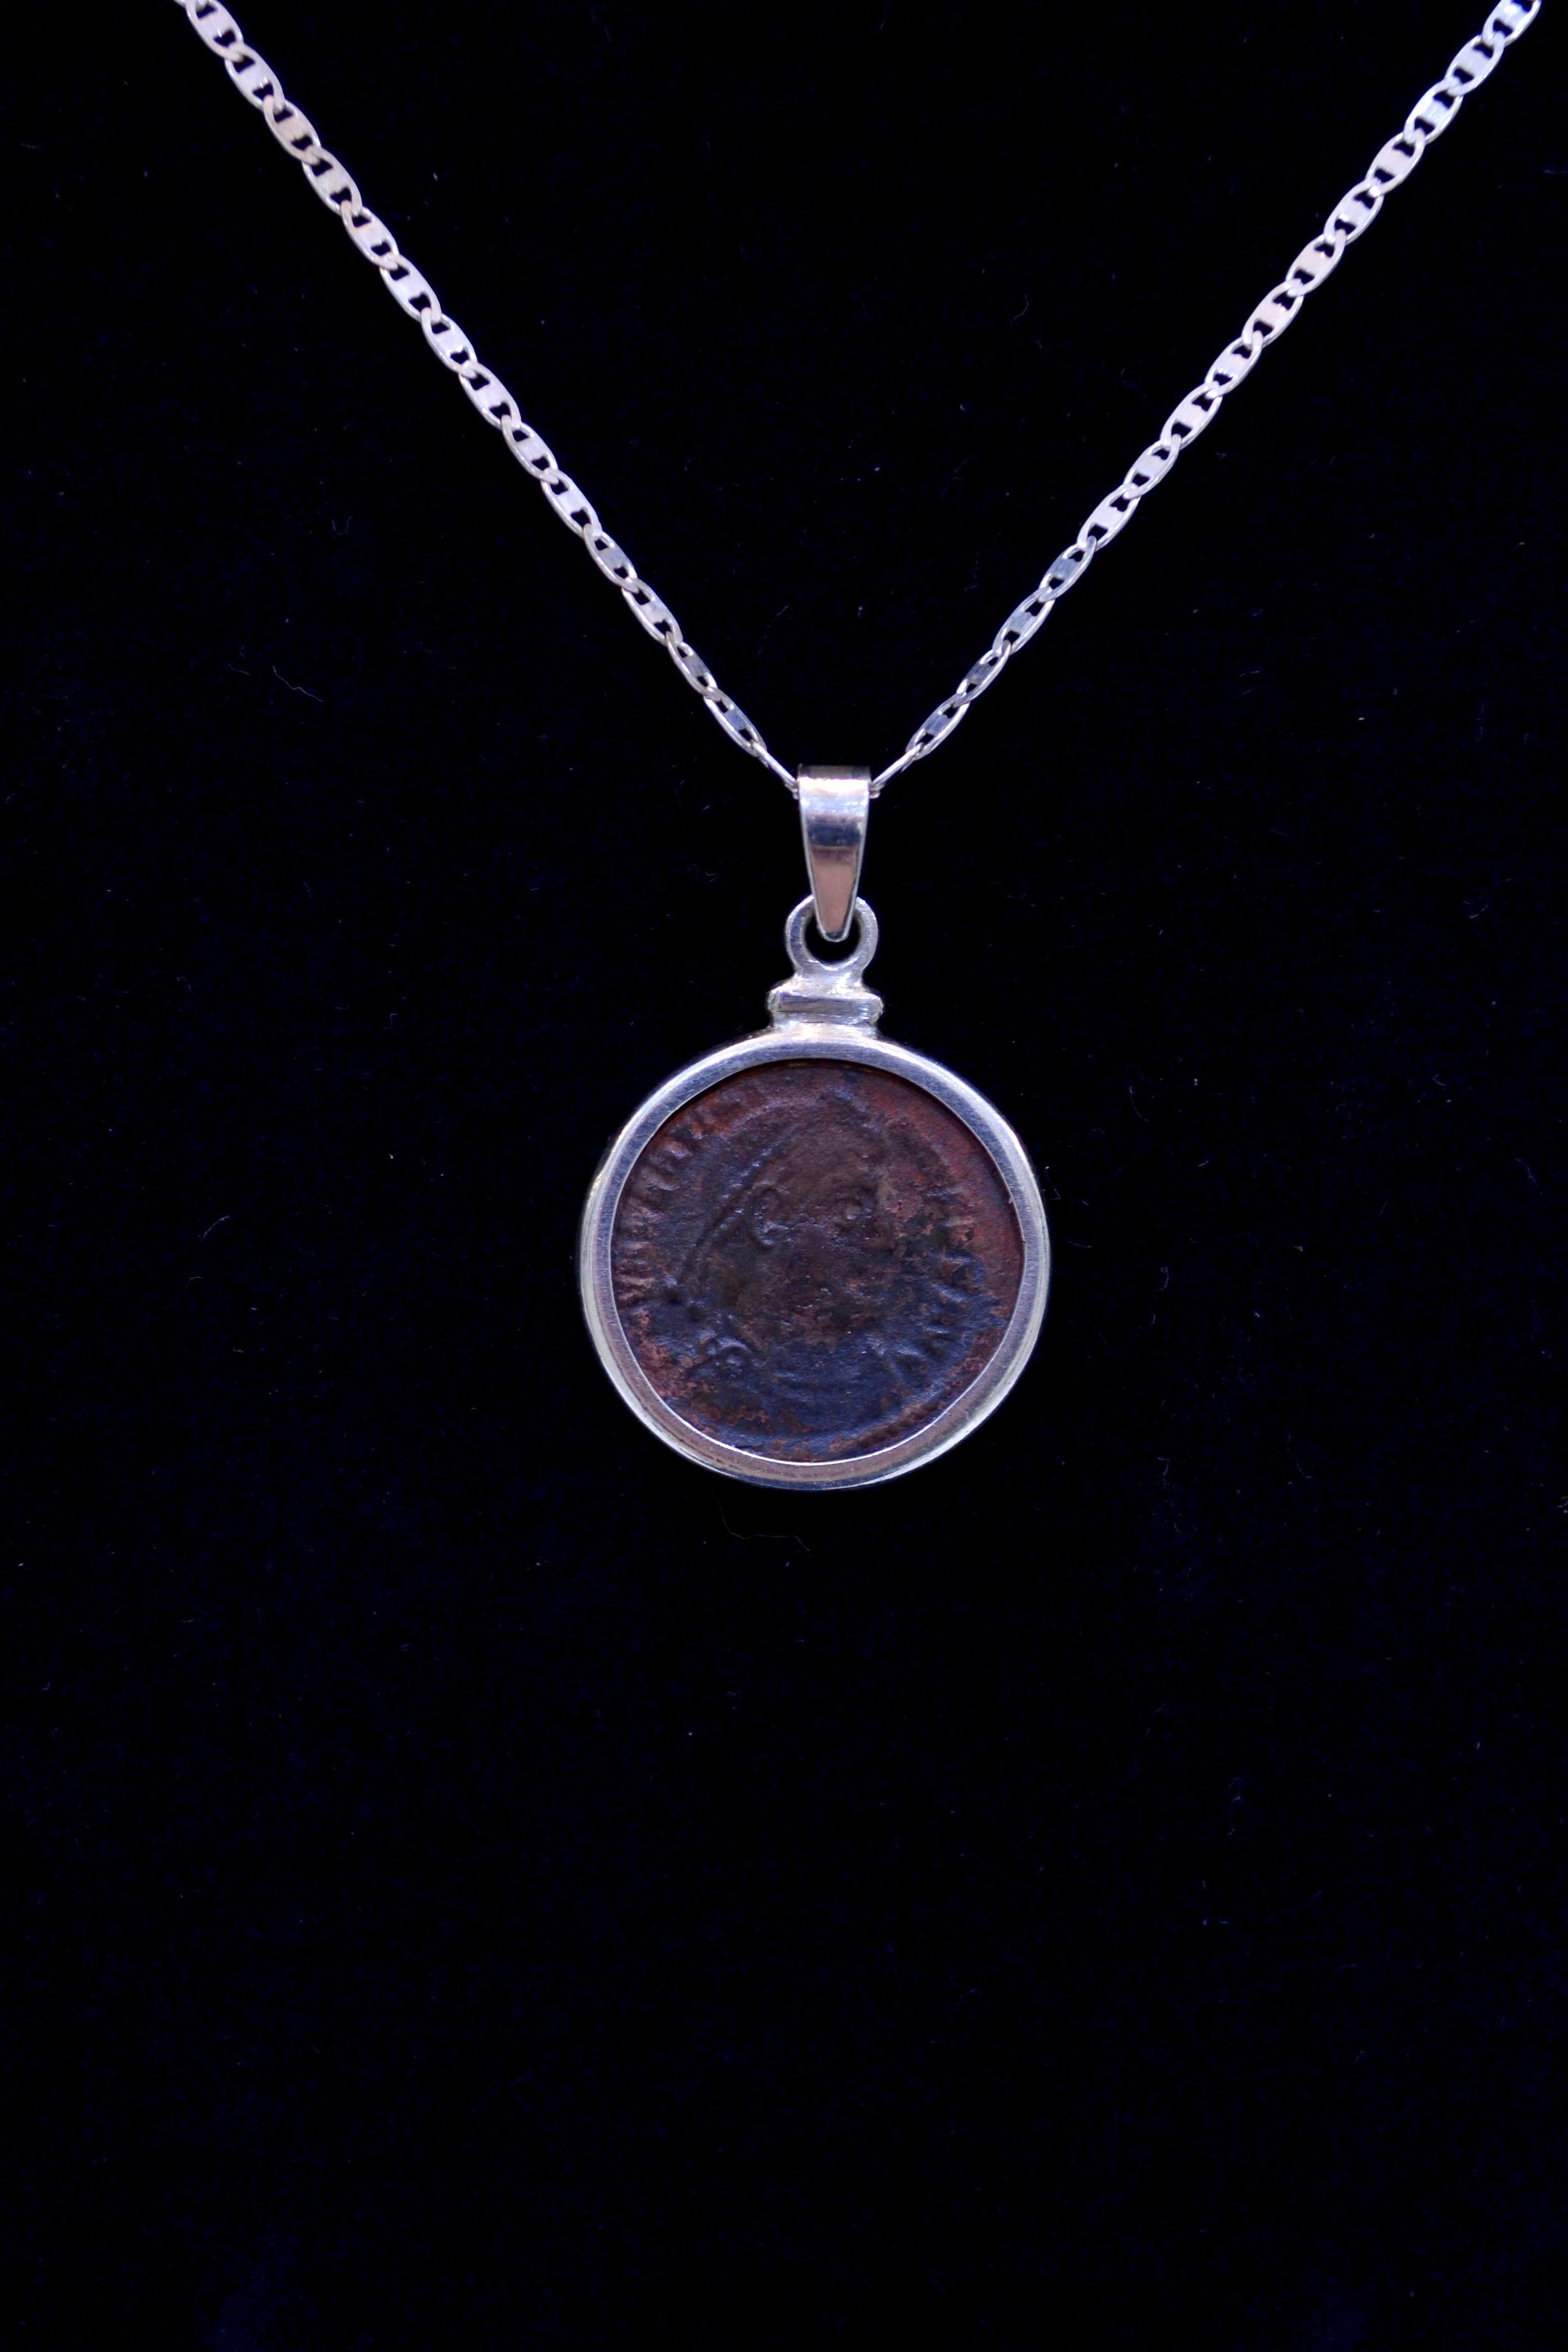 Authentische römische Bronzemünze Ca. 364-378 CE montiert auf zeitgenössischen Silber Halskette. Bereit, getragen zu werden!

Fully Flavius Julius Valens Augustus erhielt von seinem Bruder Valentinian I. nach dessen Thronbesteigung die Osthälfte des